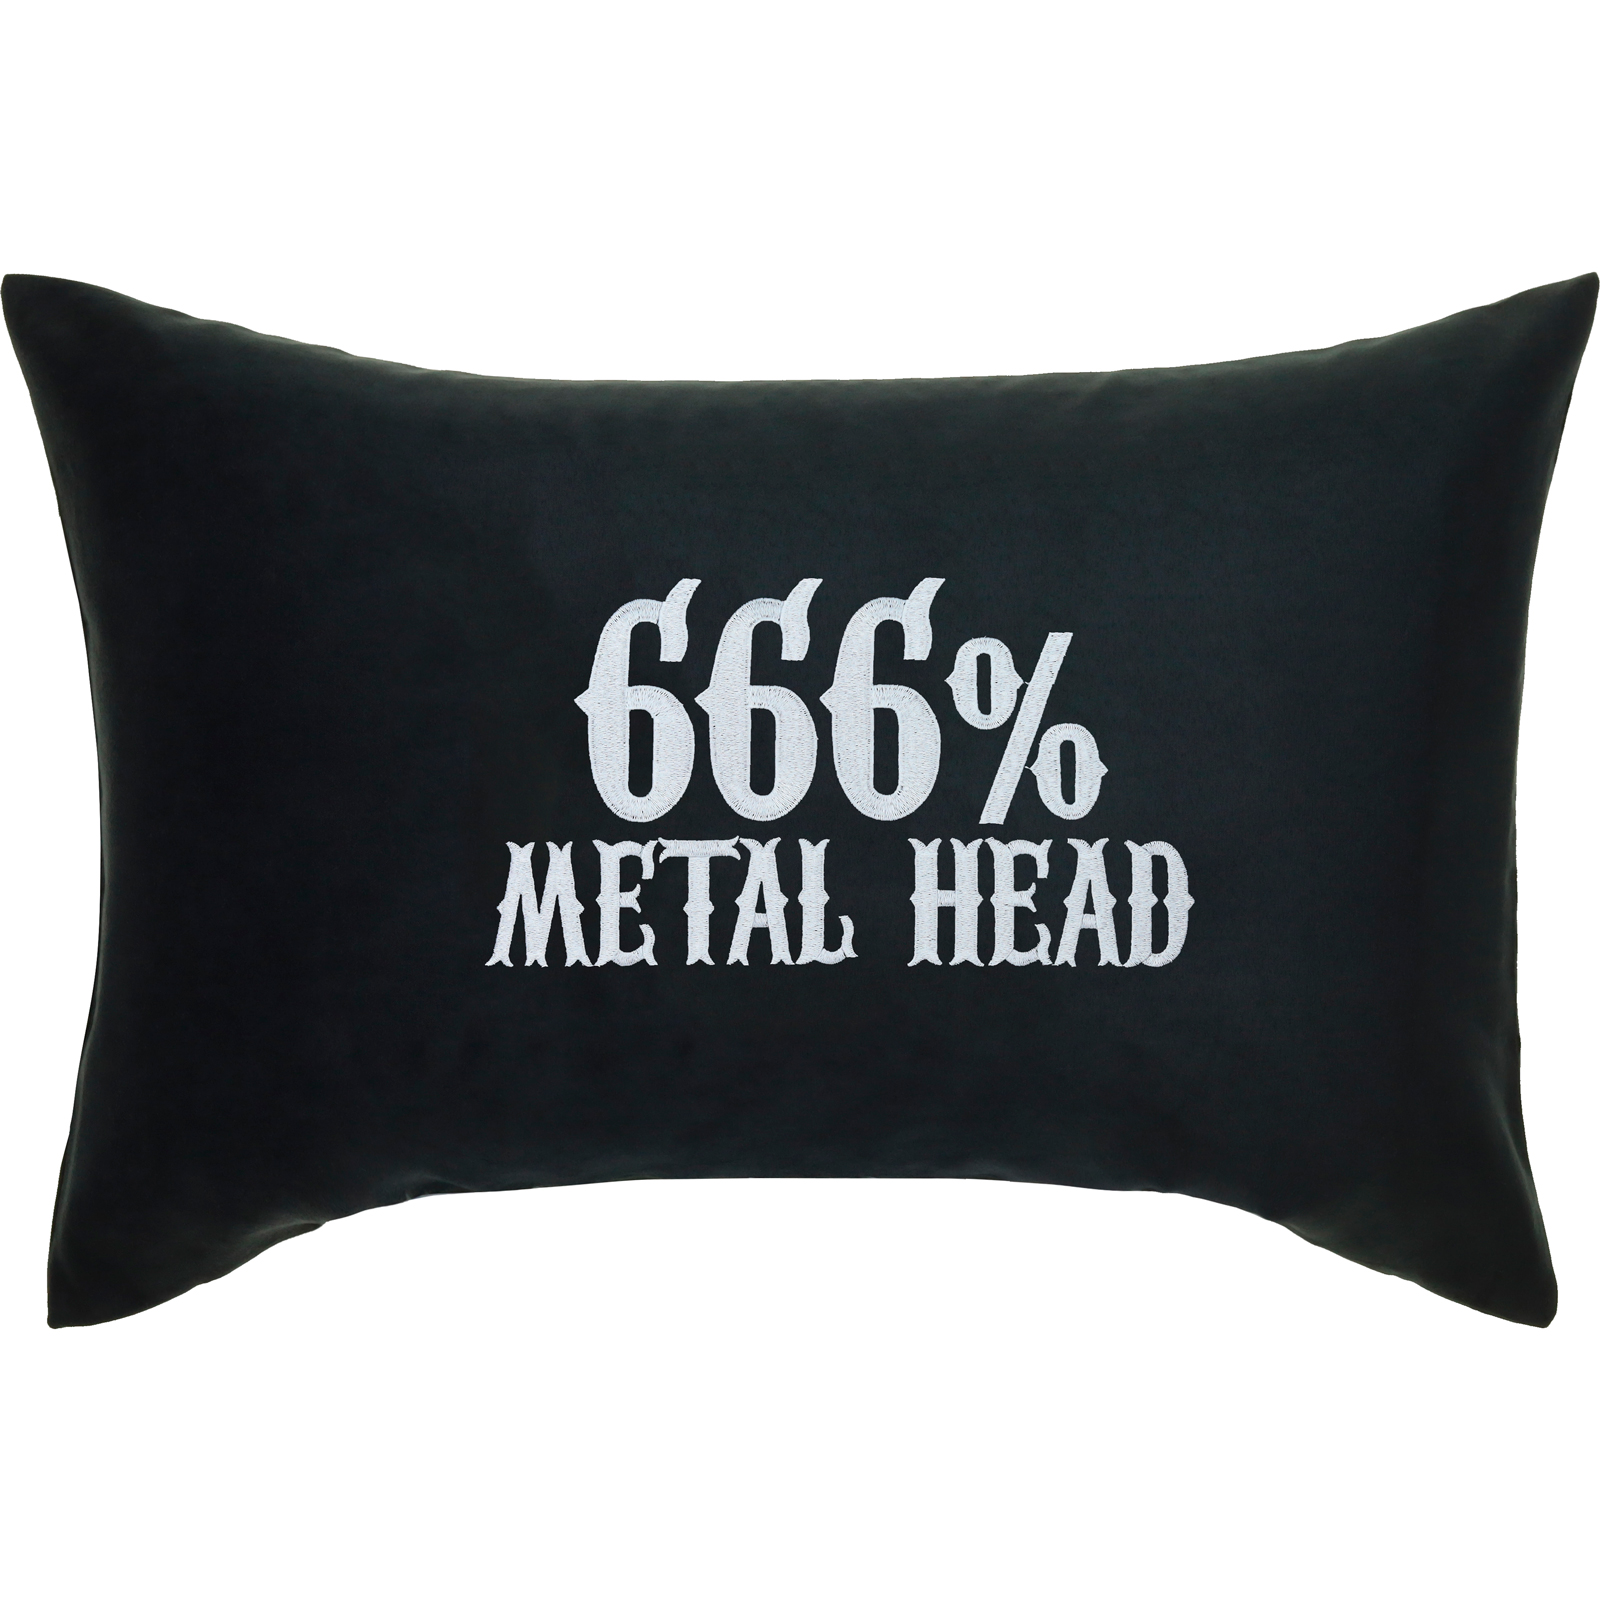 666% Metal Head